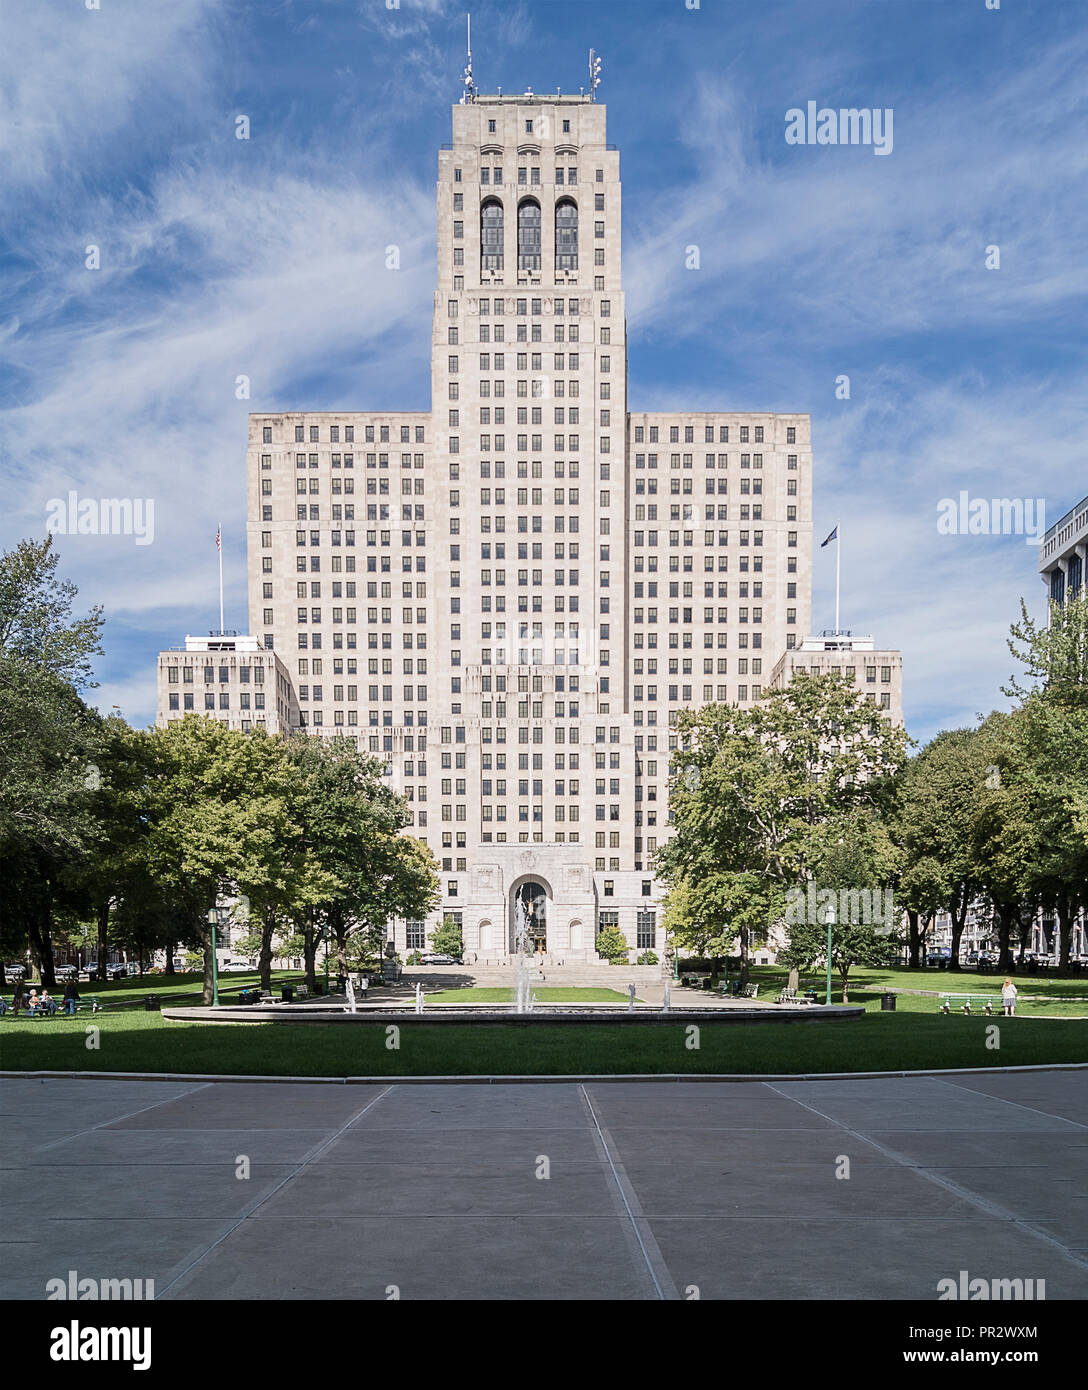 ALBANY, NUEVA YORK - Septiembre 27, 2018: Vista completa del estado de Nueva York de la División Criminal del oeste del Edificio del Capitolio en Albany Parque del Capitolio, la casa de Foto de stock